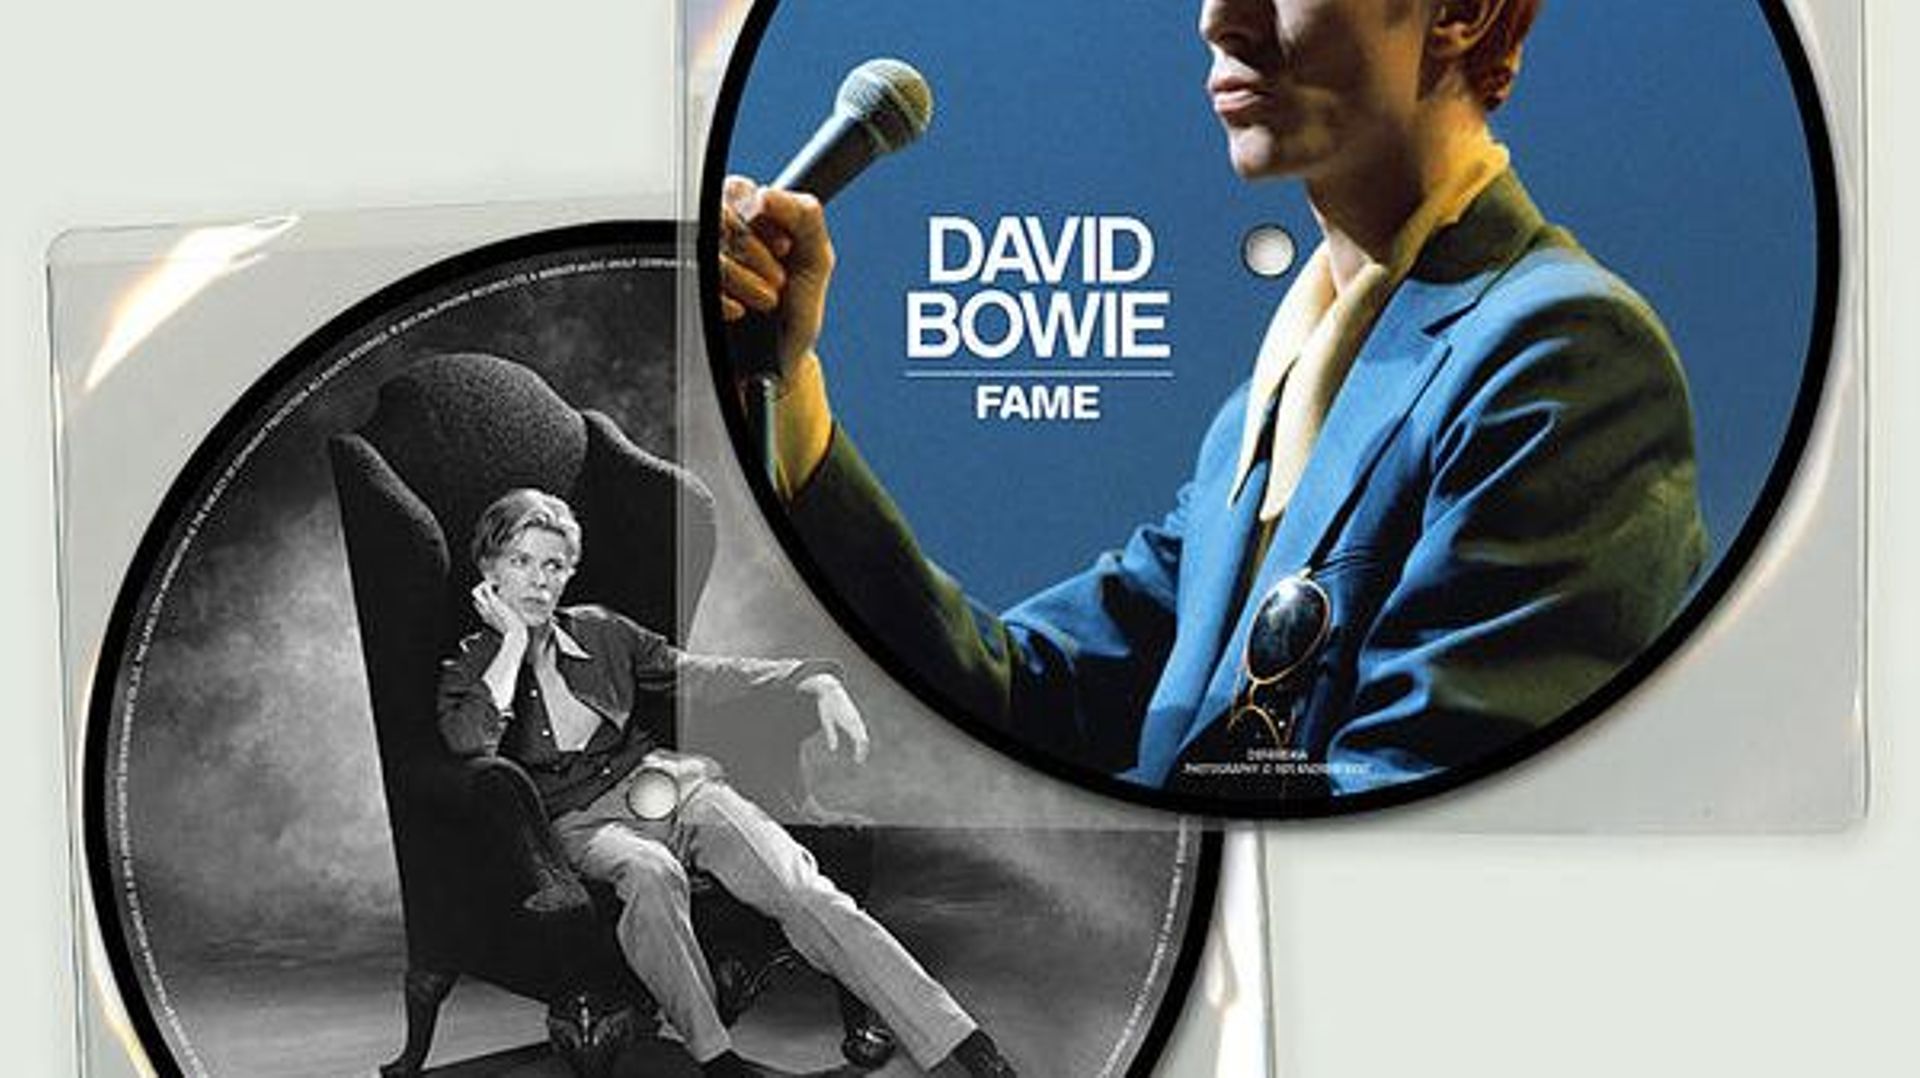 David Bowie réédite son tube "Fame" en picture disc